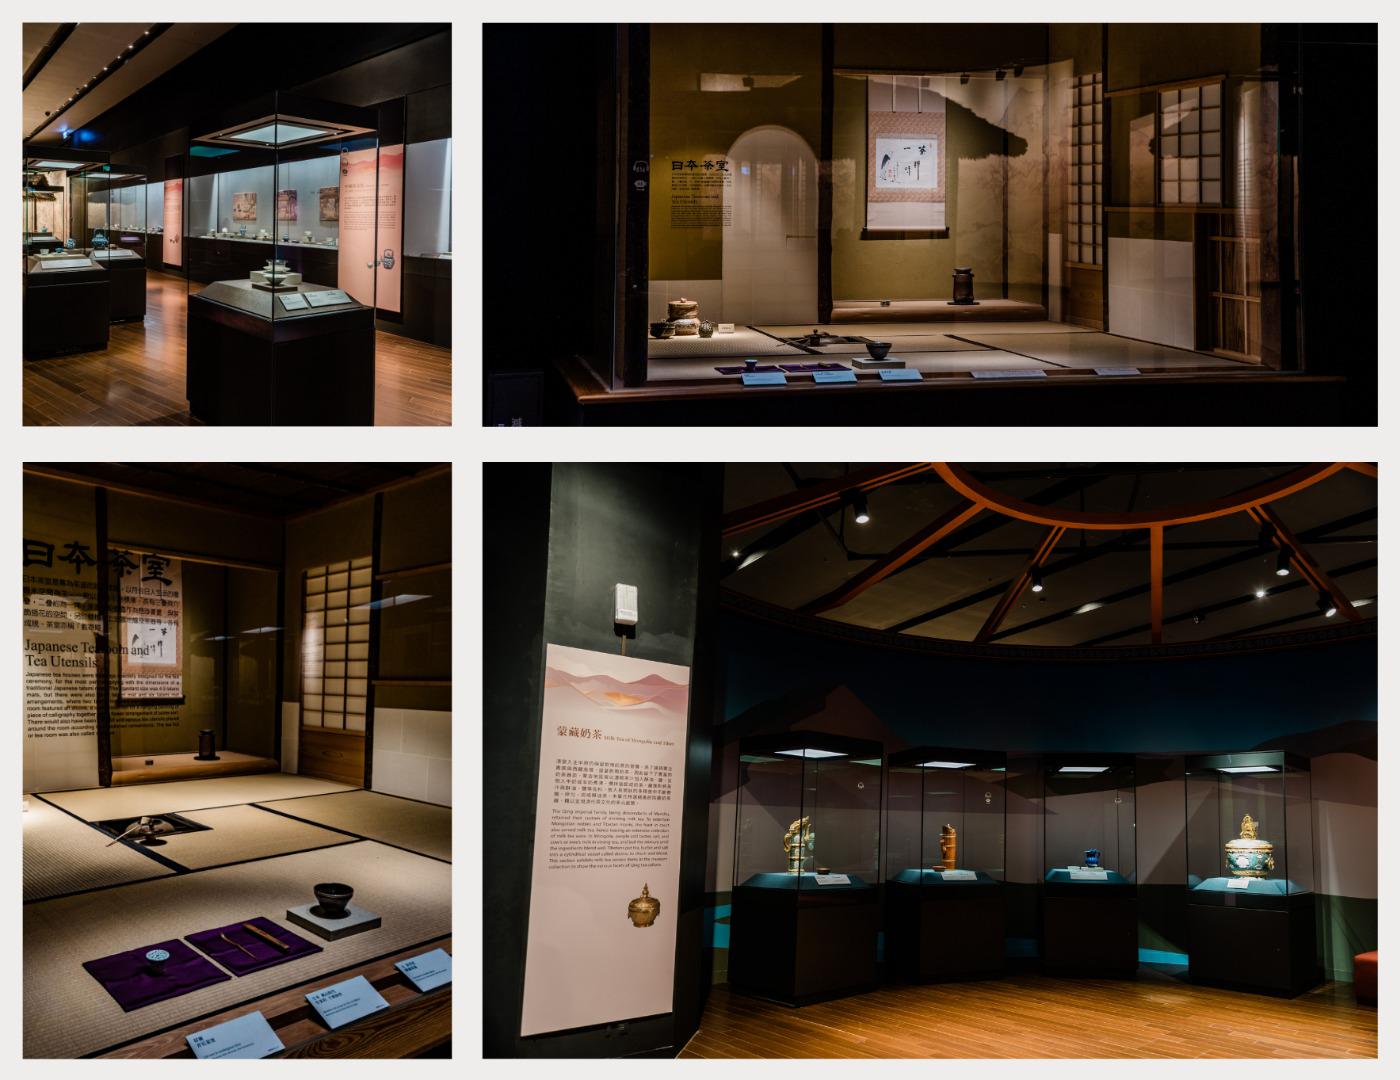 互動設計, 博物館展覽設計, 王一設計, 互動體驗, 展覽, 博物館, kingone